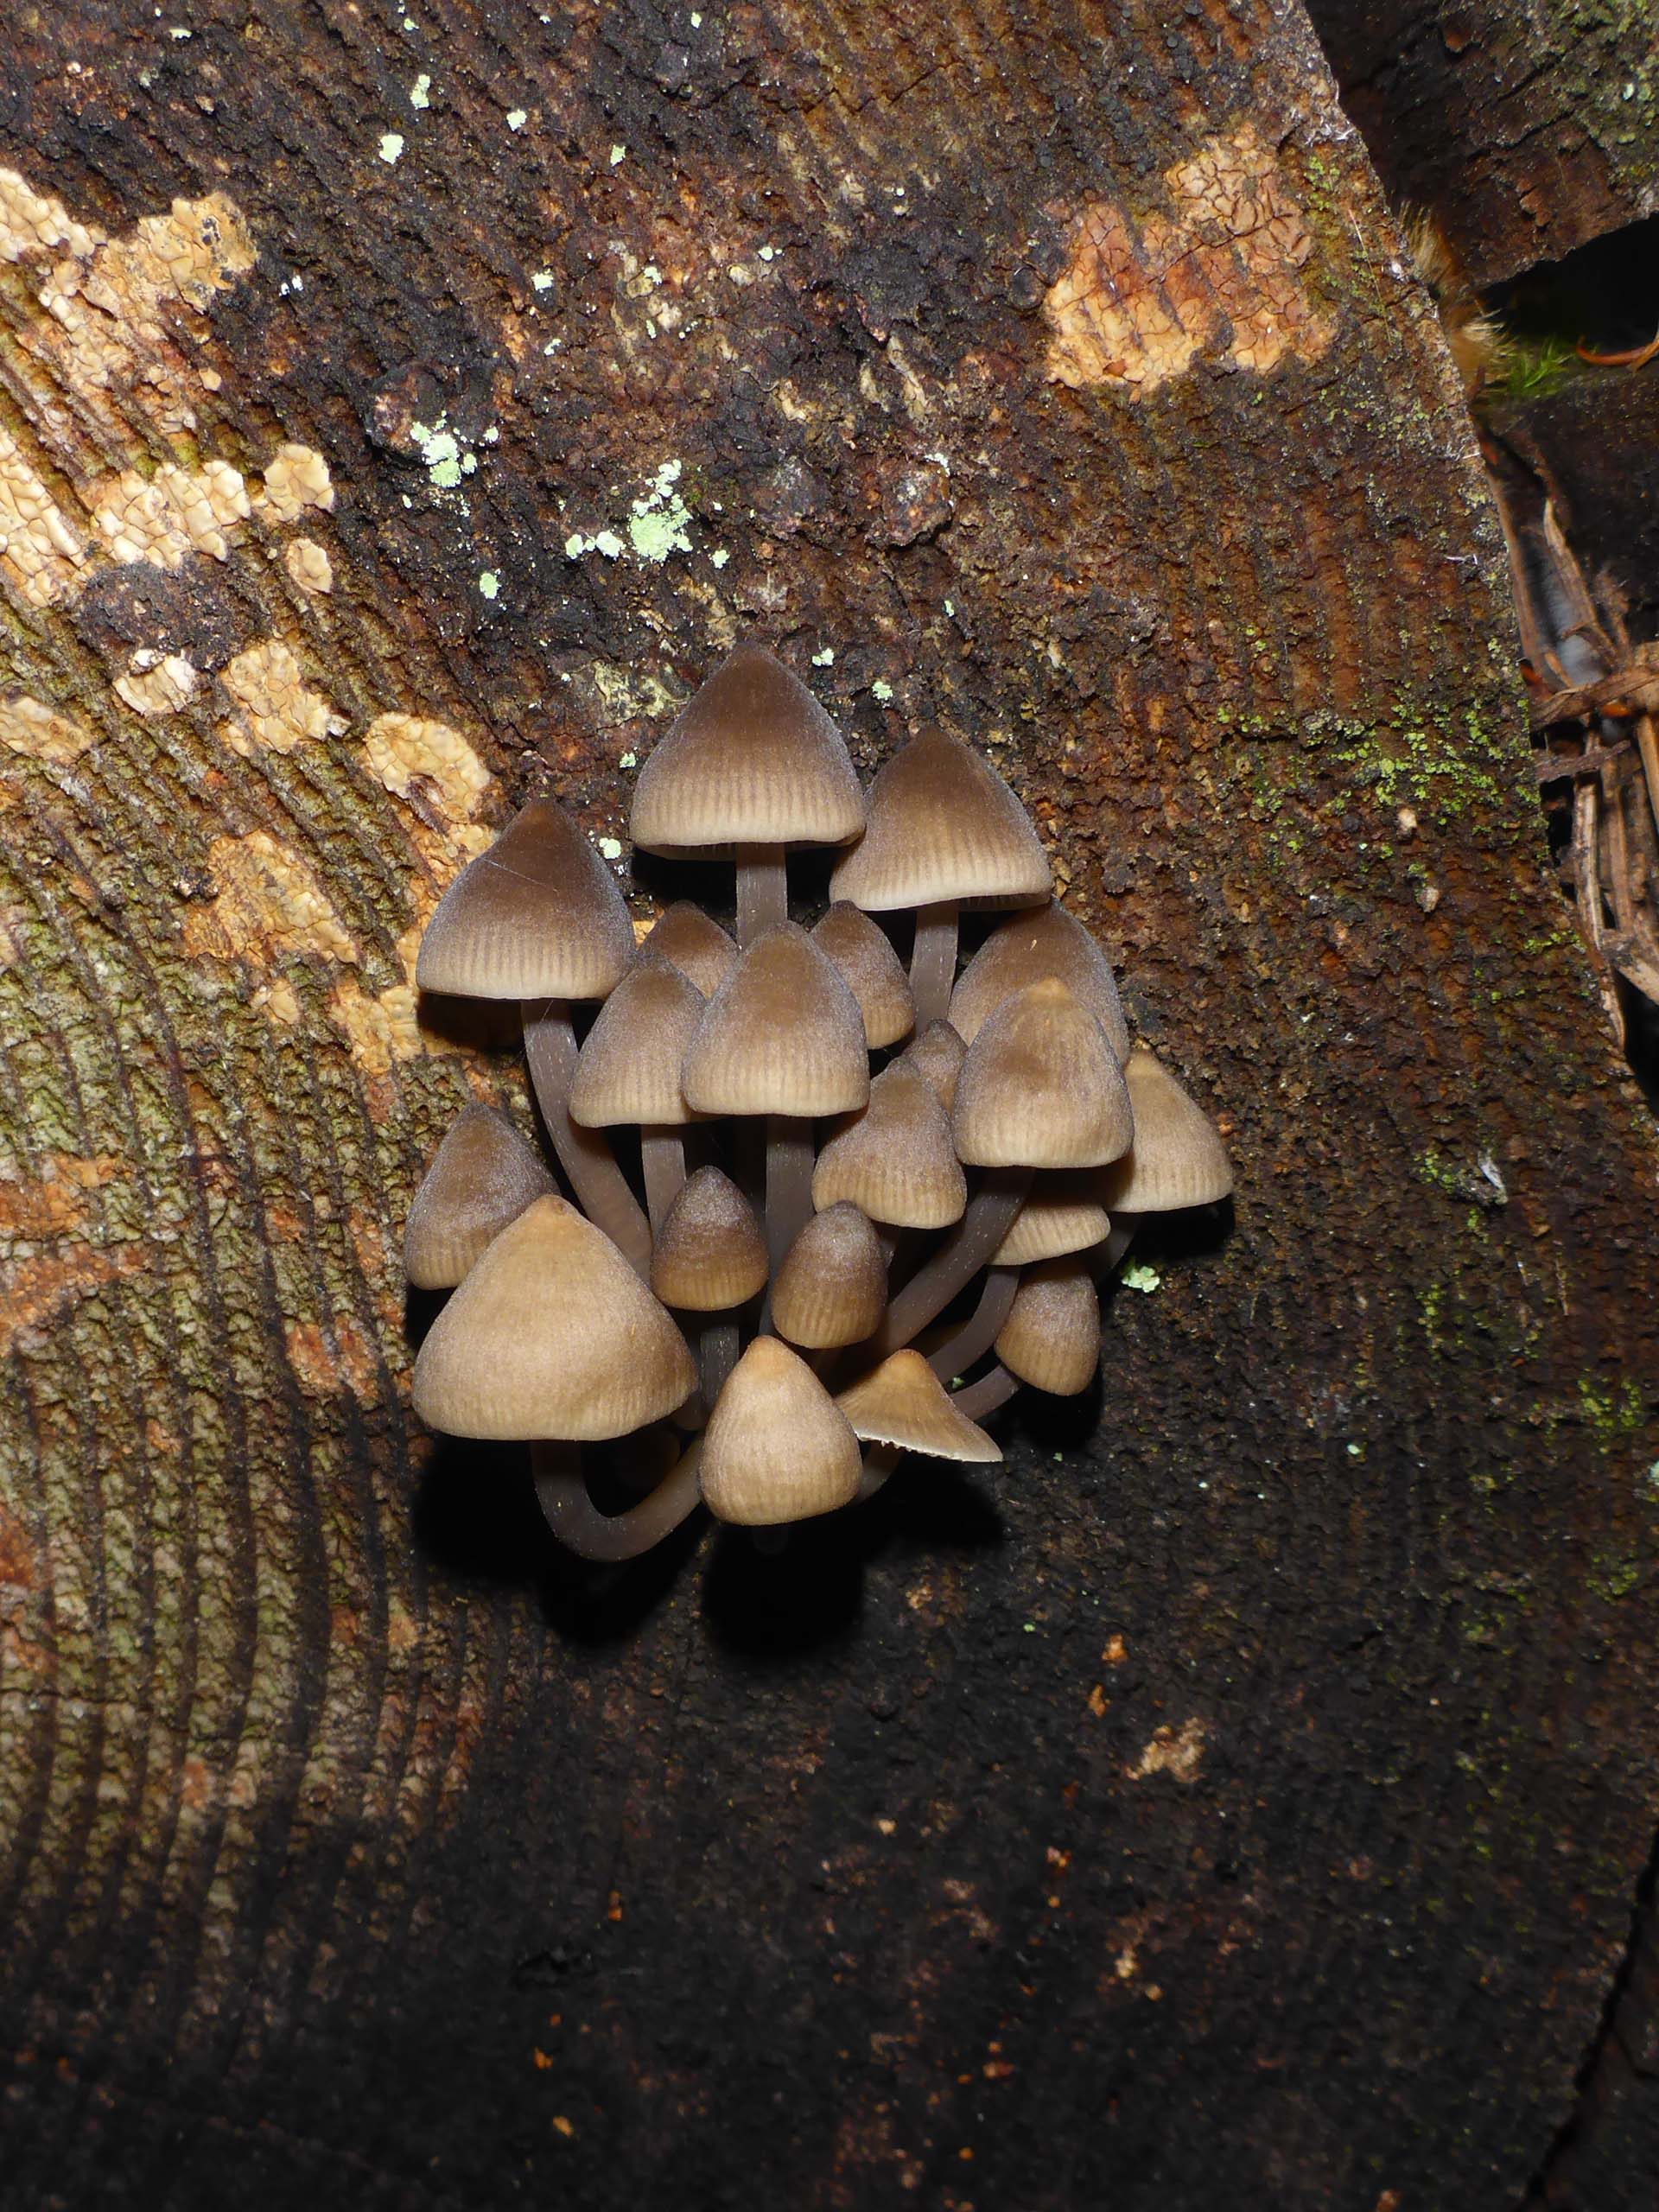 Mushrooms. D. Burk.